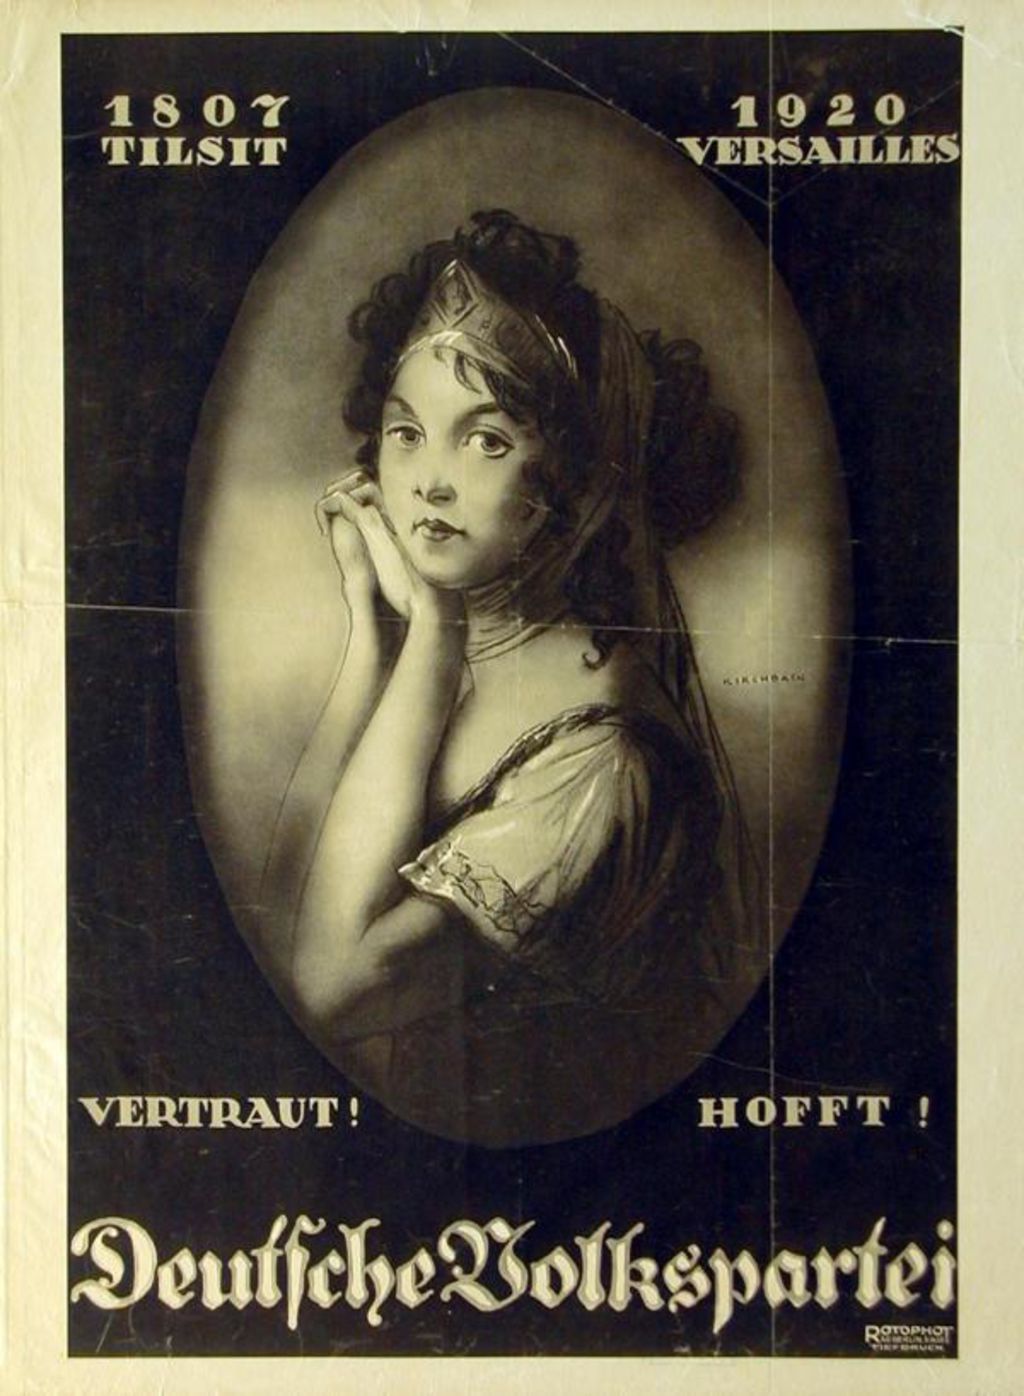 Exponat: Plakat: Deutsche Volkspartei, 1920